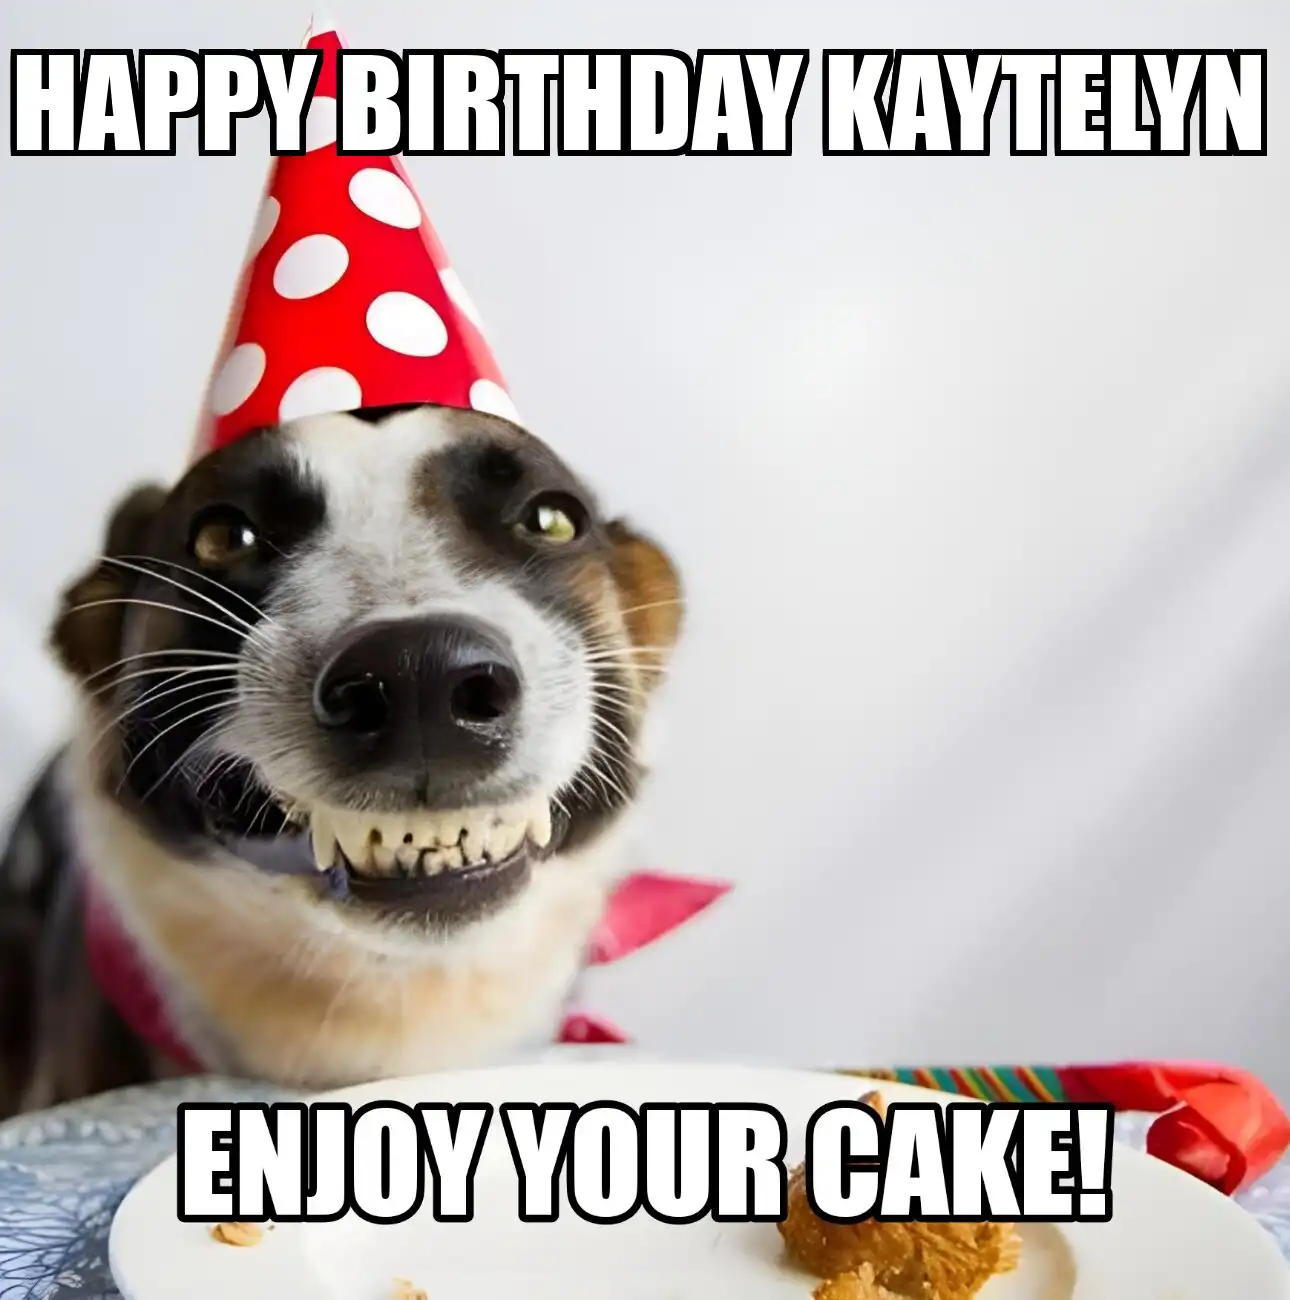 Happy Birthday Kaytelyn Enjoy Your Cake Dog Meme